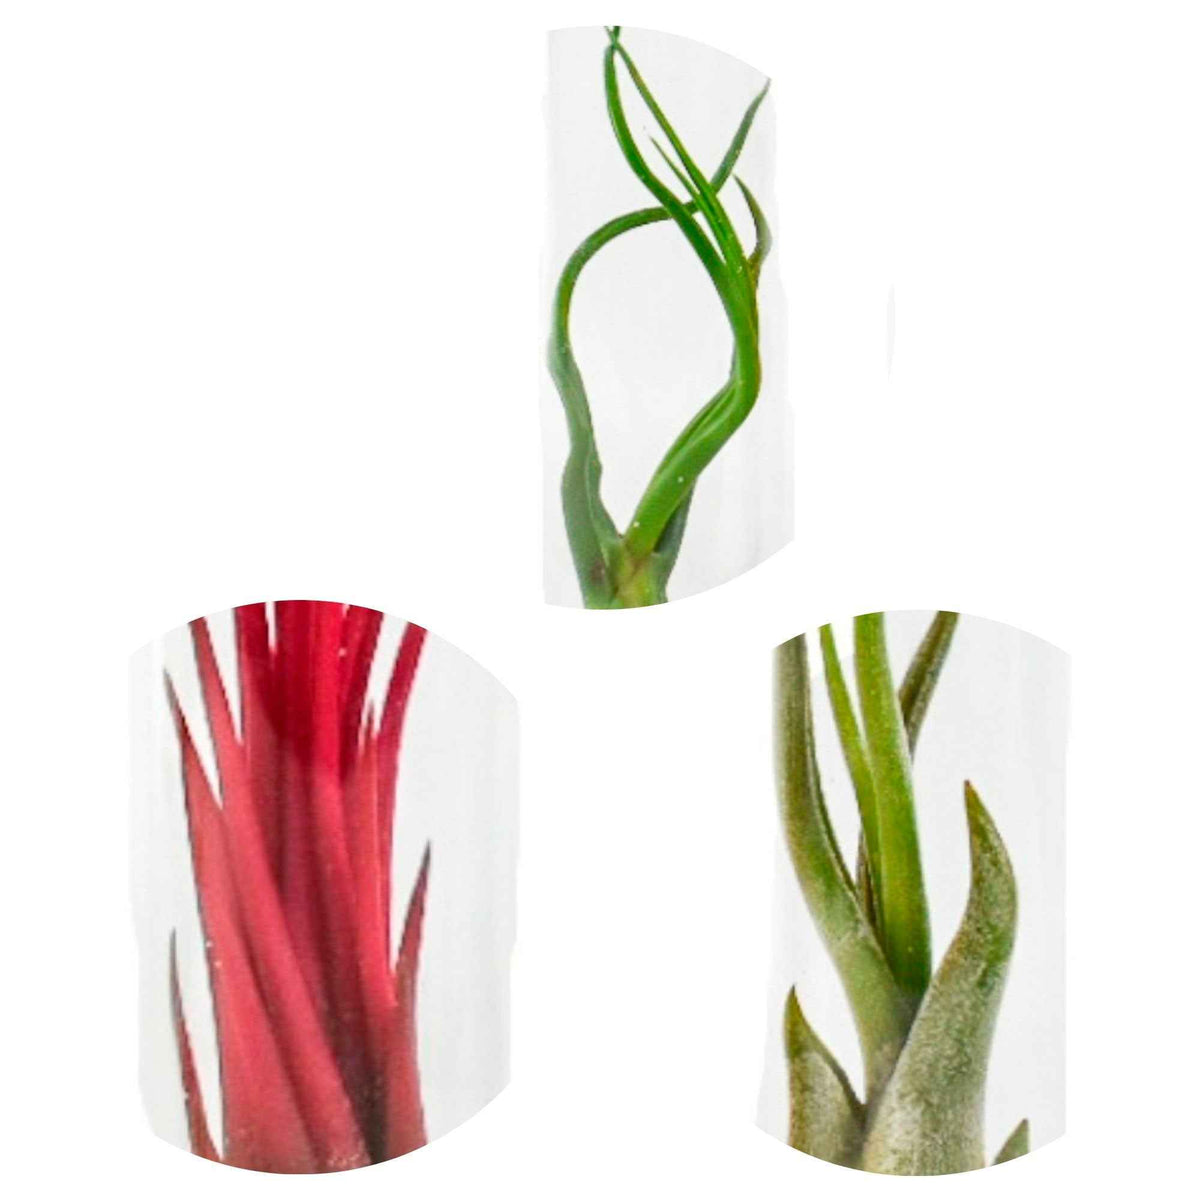 Collection de Tillandsias avec tubes en verre - Tillandsia ionantha, tillandsia caput-medusae, tillandsia bulbosa - Plantes d'intérieur